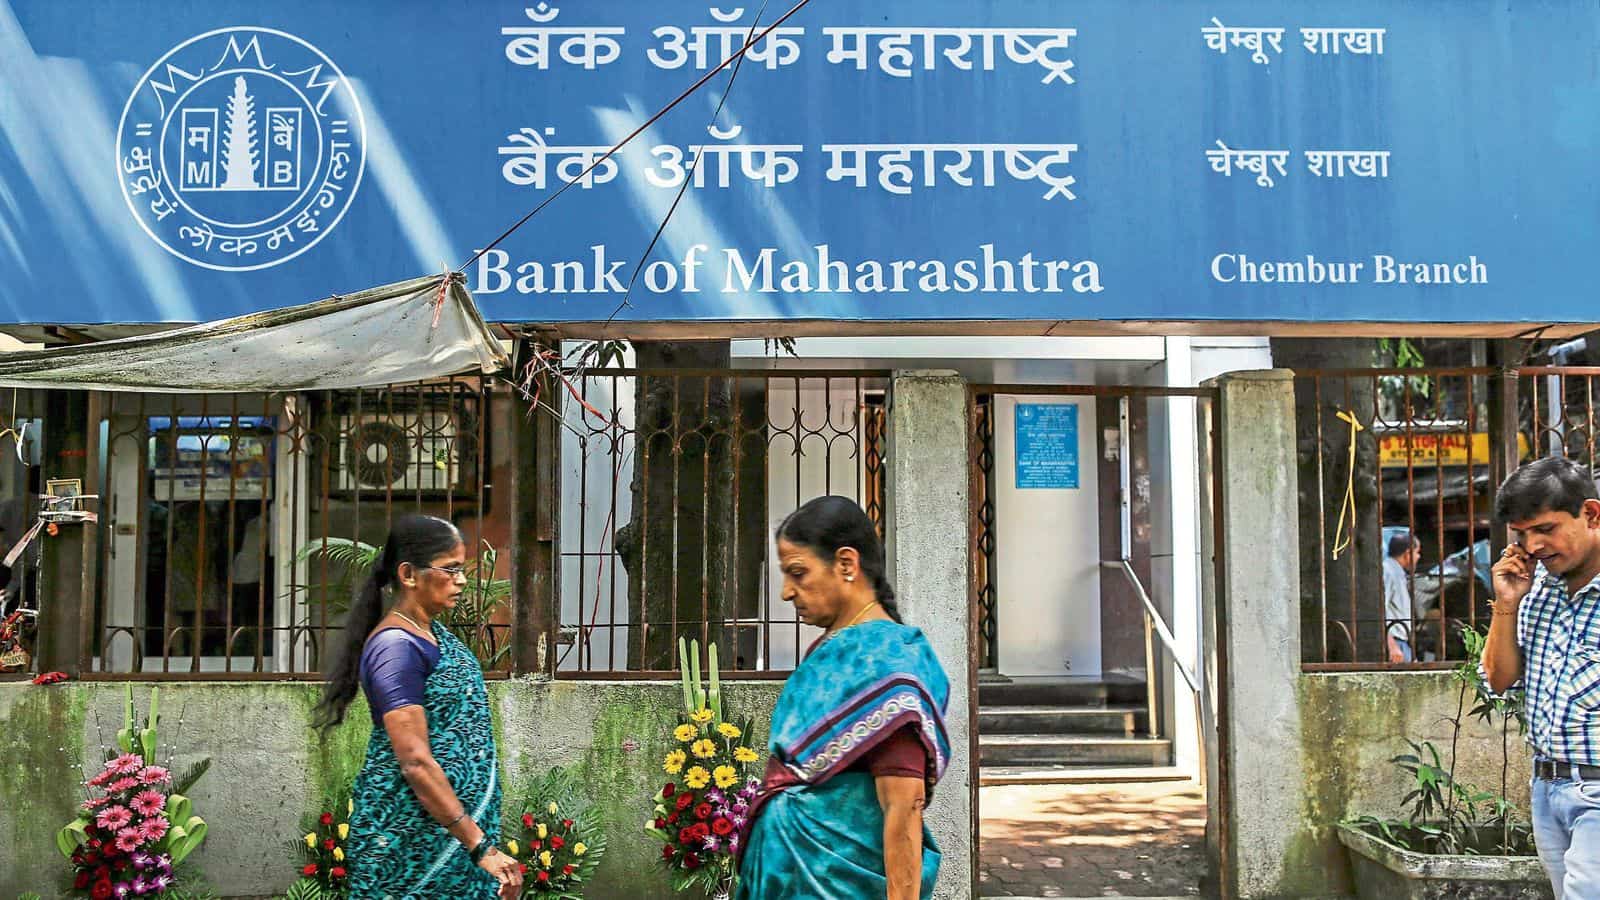 अर्थव्यवस्था समसामयिकी 1 (1-March-2022)बैंक ऑफ महाराष्ट्र ने ओडिशा में  "प्रोजेक्ट बैंकसखी" लॉन्च किया(Bank of Maharashtra launches "Project  Banksakhi" in Odisha)